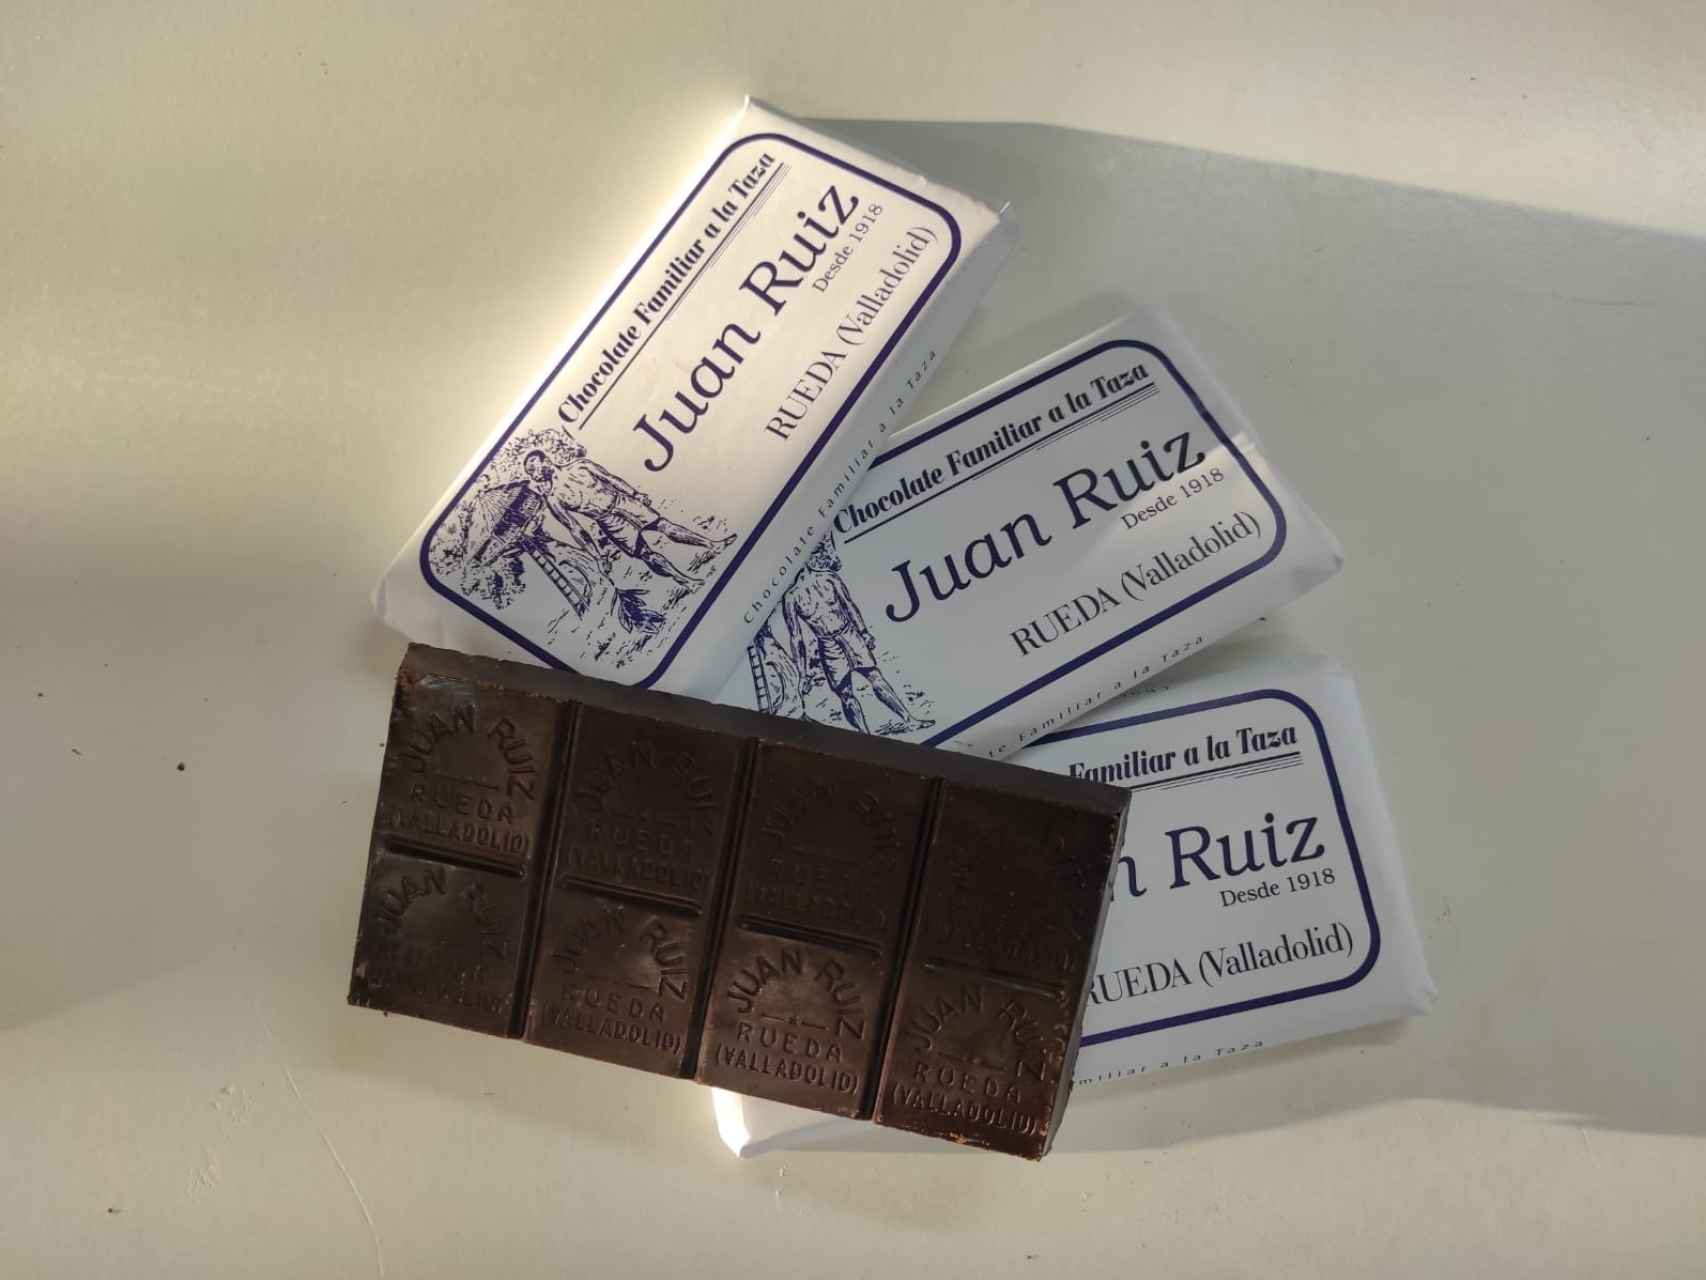 El chocolate que produce Juan Ruiz